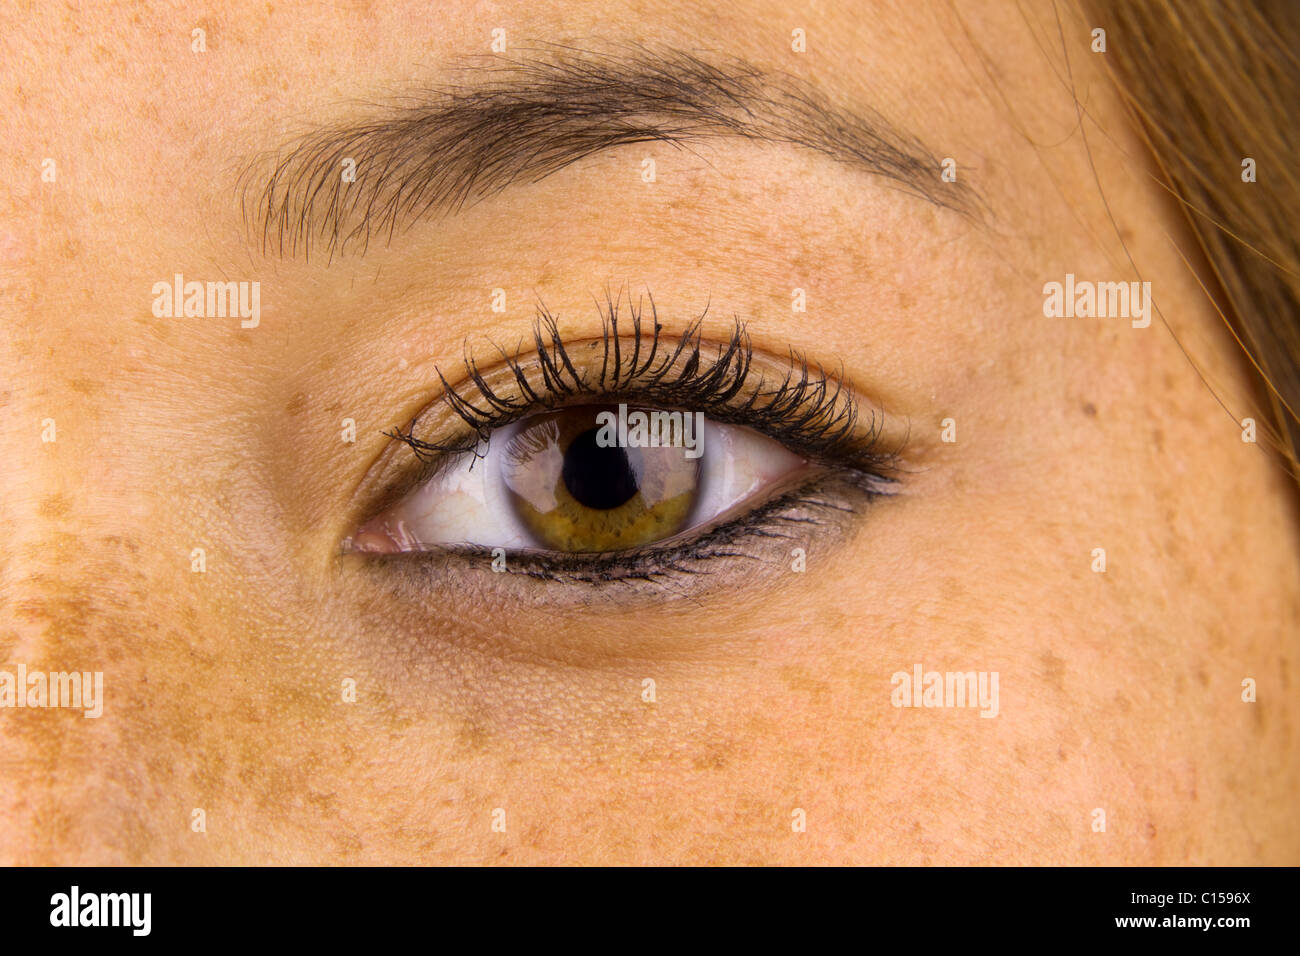 Cerrar los ojos de la mujer y la piel circundante mostrando el daño solar, conocido comúnmente como pecas. Foto de stock